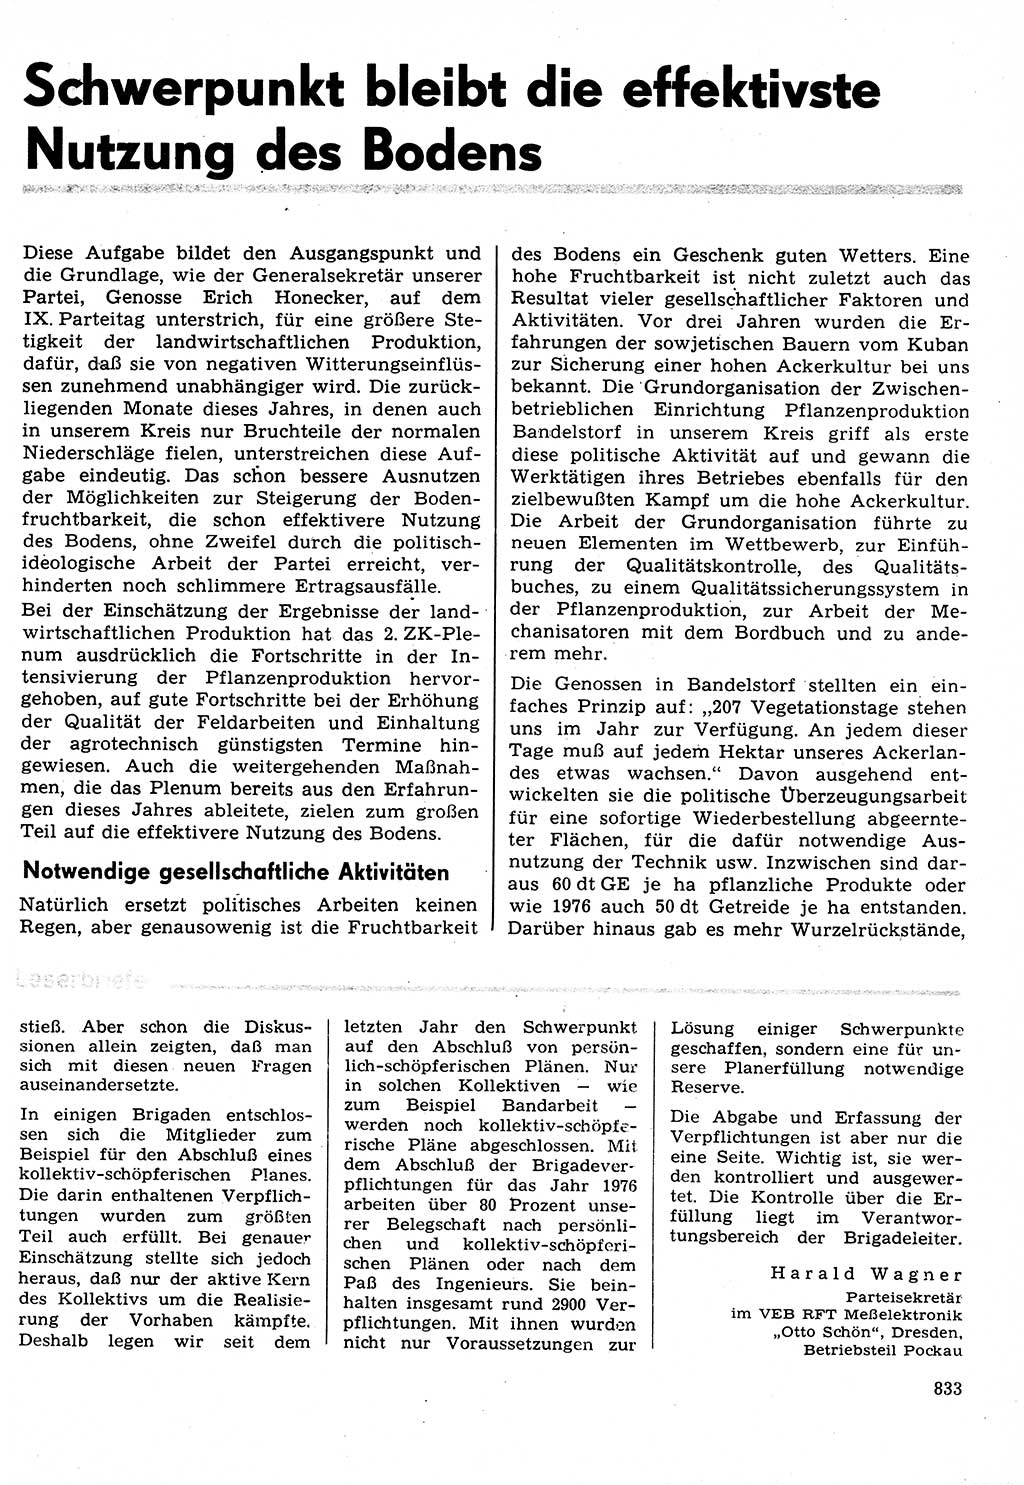 Neuer Weg (NW), Organ des Zentralkomitees (ZK) der SED (Sozialistische Einheitspartei Deutschlands) für Fragen des Parteilebens, 31. Jahrgang [Deutsche Demokratische Republik (DDR)] 1976, Seite 833 (NW ZK SED DDR 1976, S. 833)